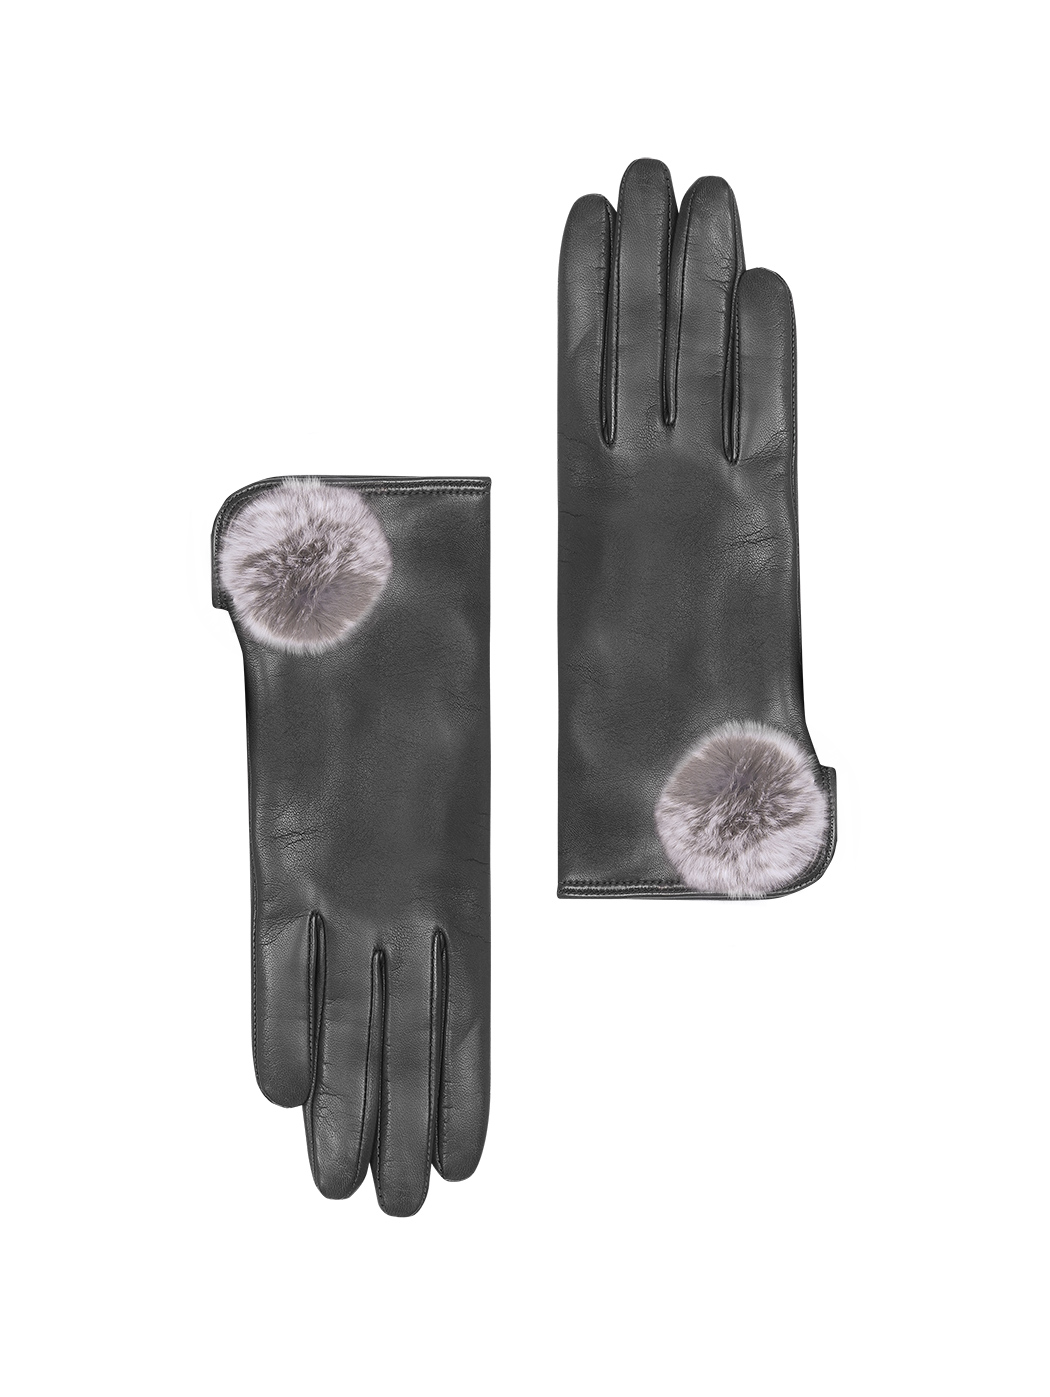 Women's Leather Gloves with Fur Pom-pom Black